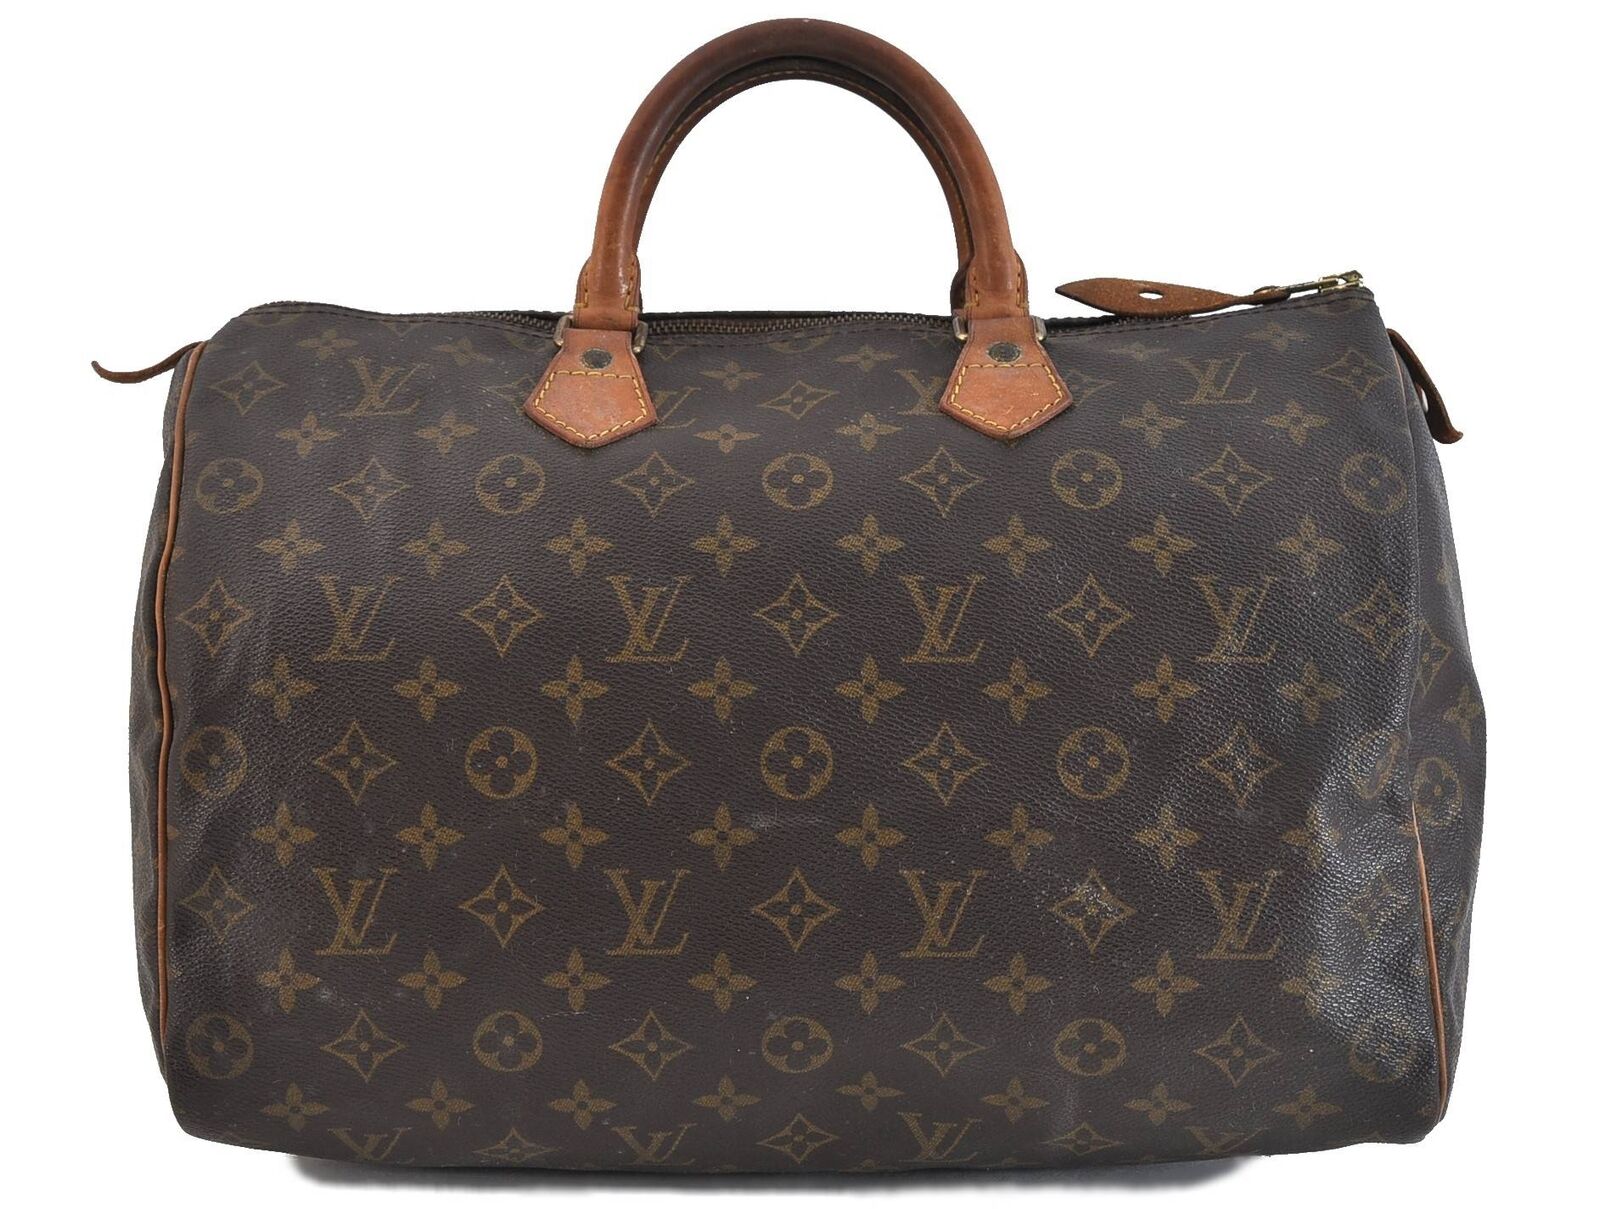 Authentic Louis Vuitton Monogram Speedy 35 Hand Bag M41524 LV 4102C